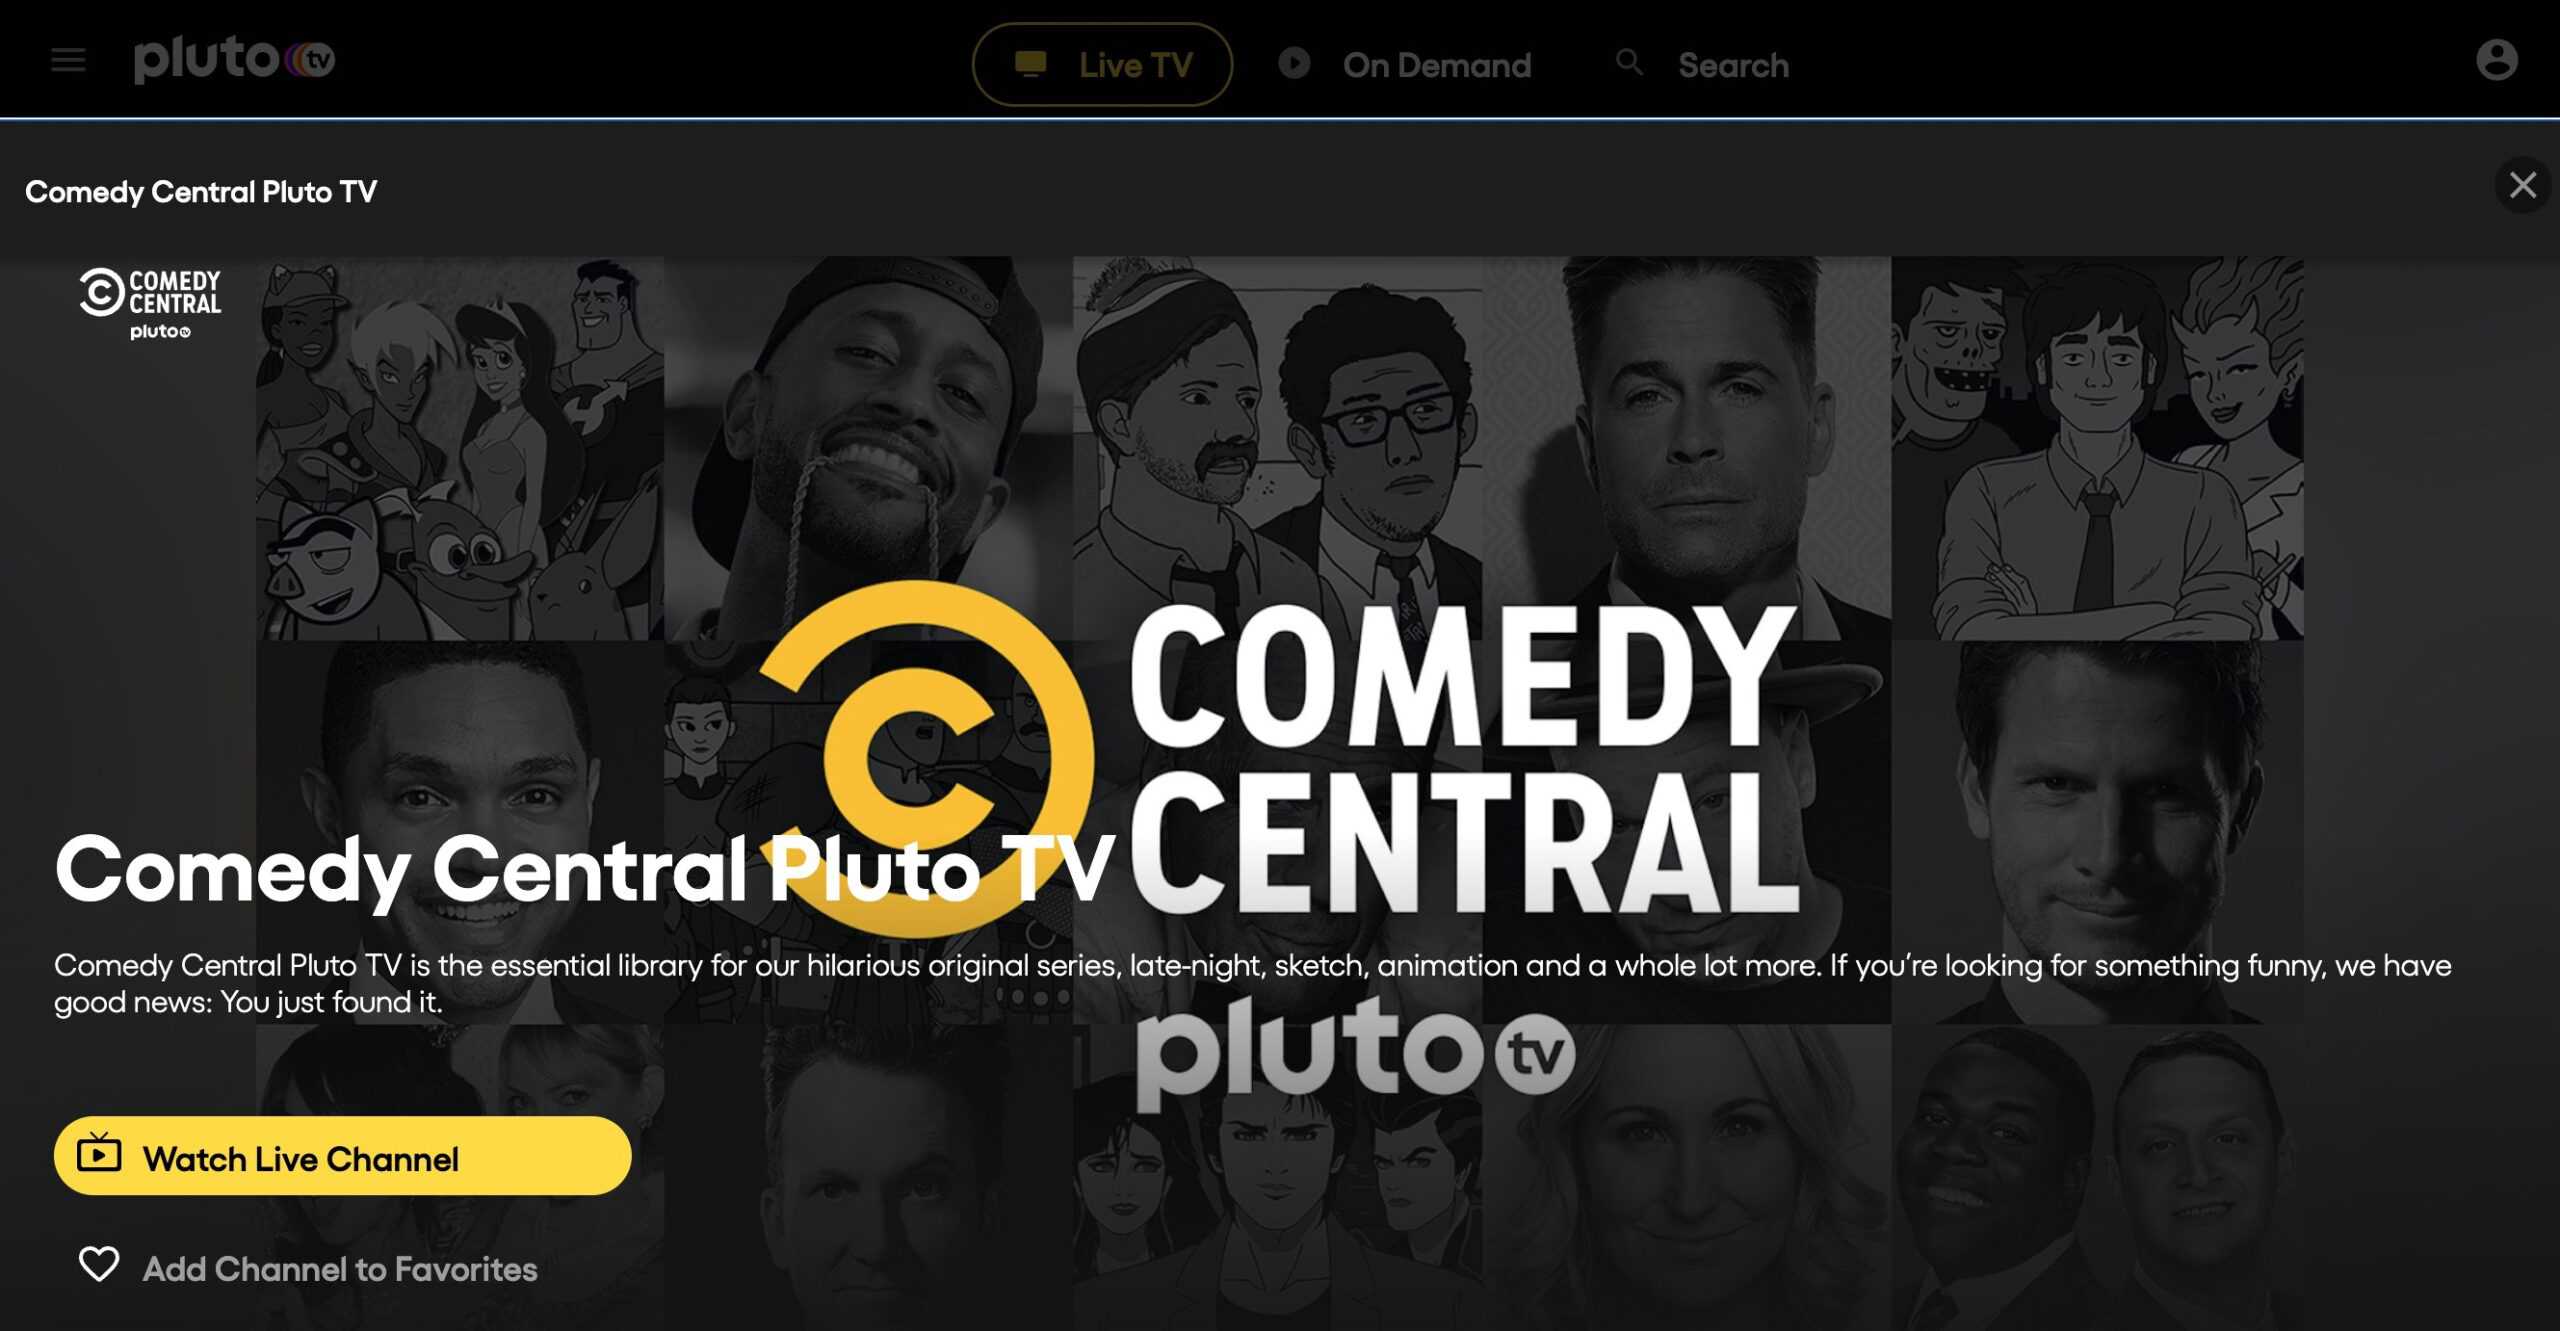 Comedy Central Pluto